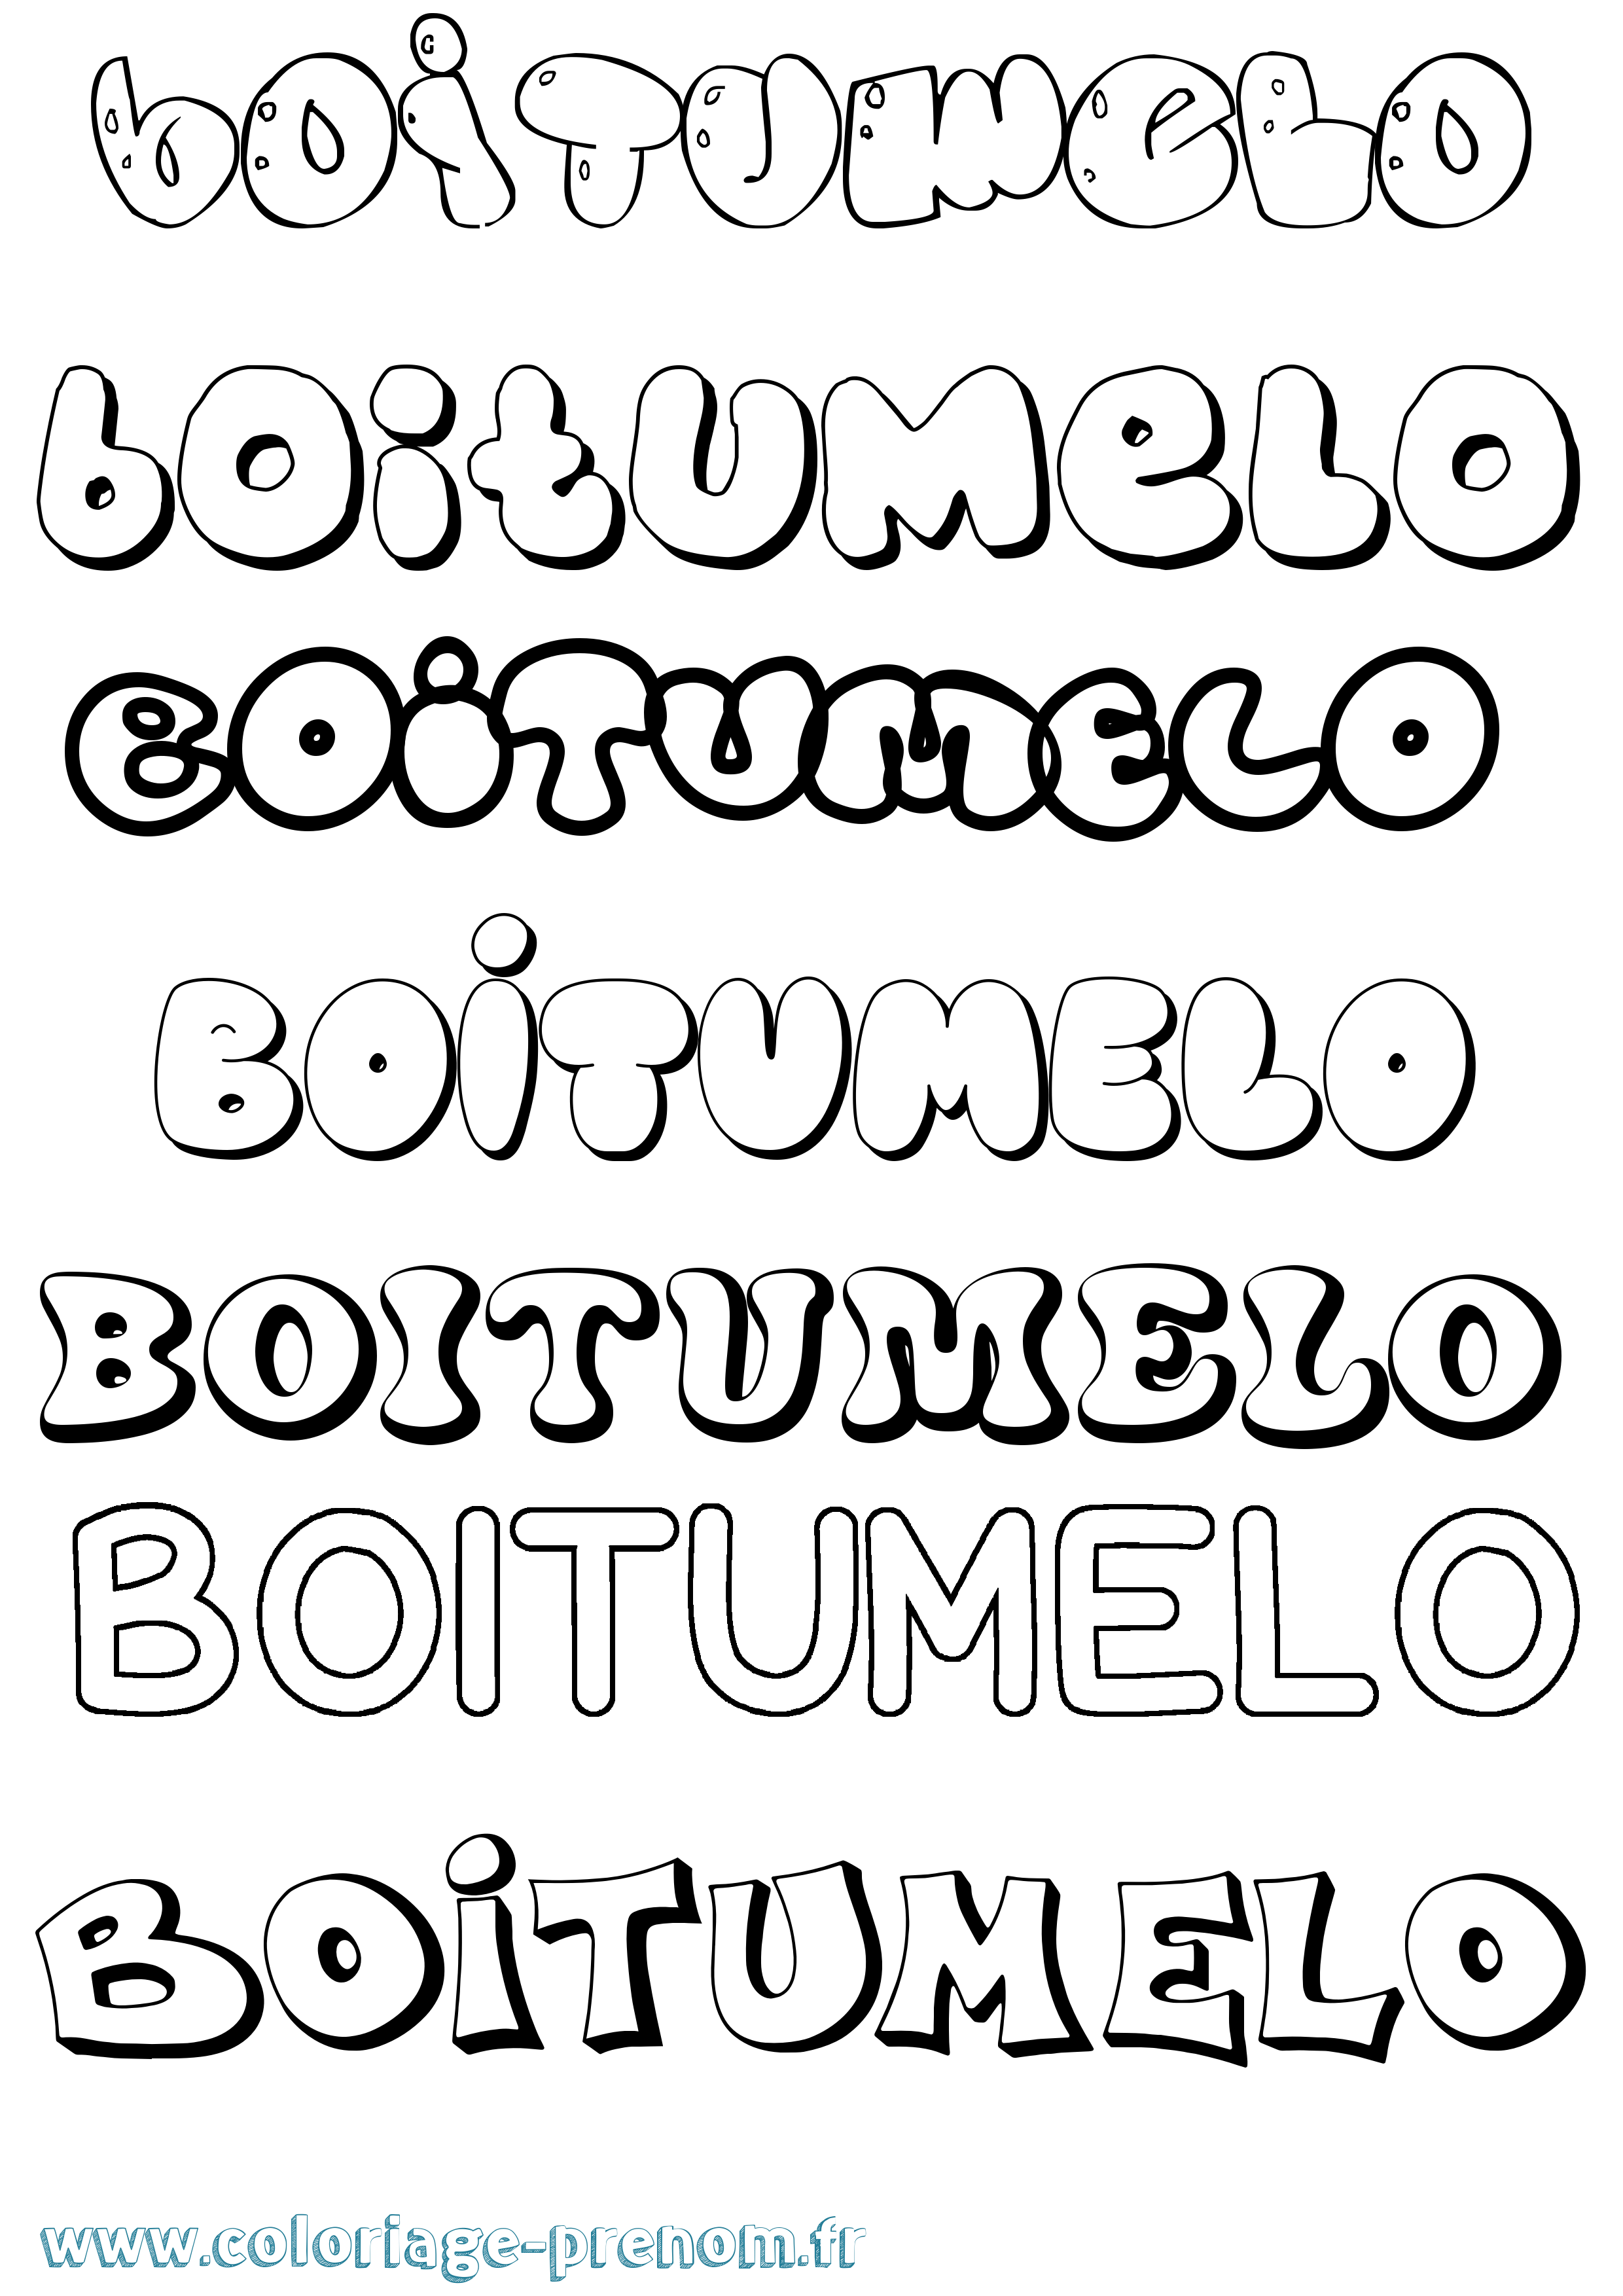 Coloriage prénom Boitumelo Bubble